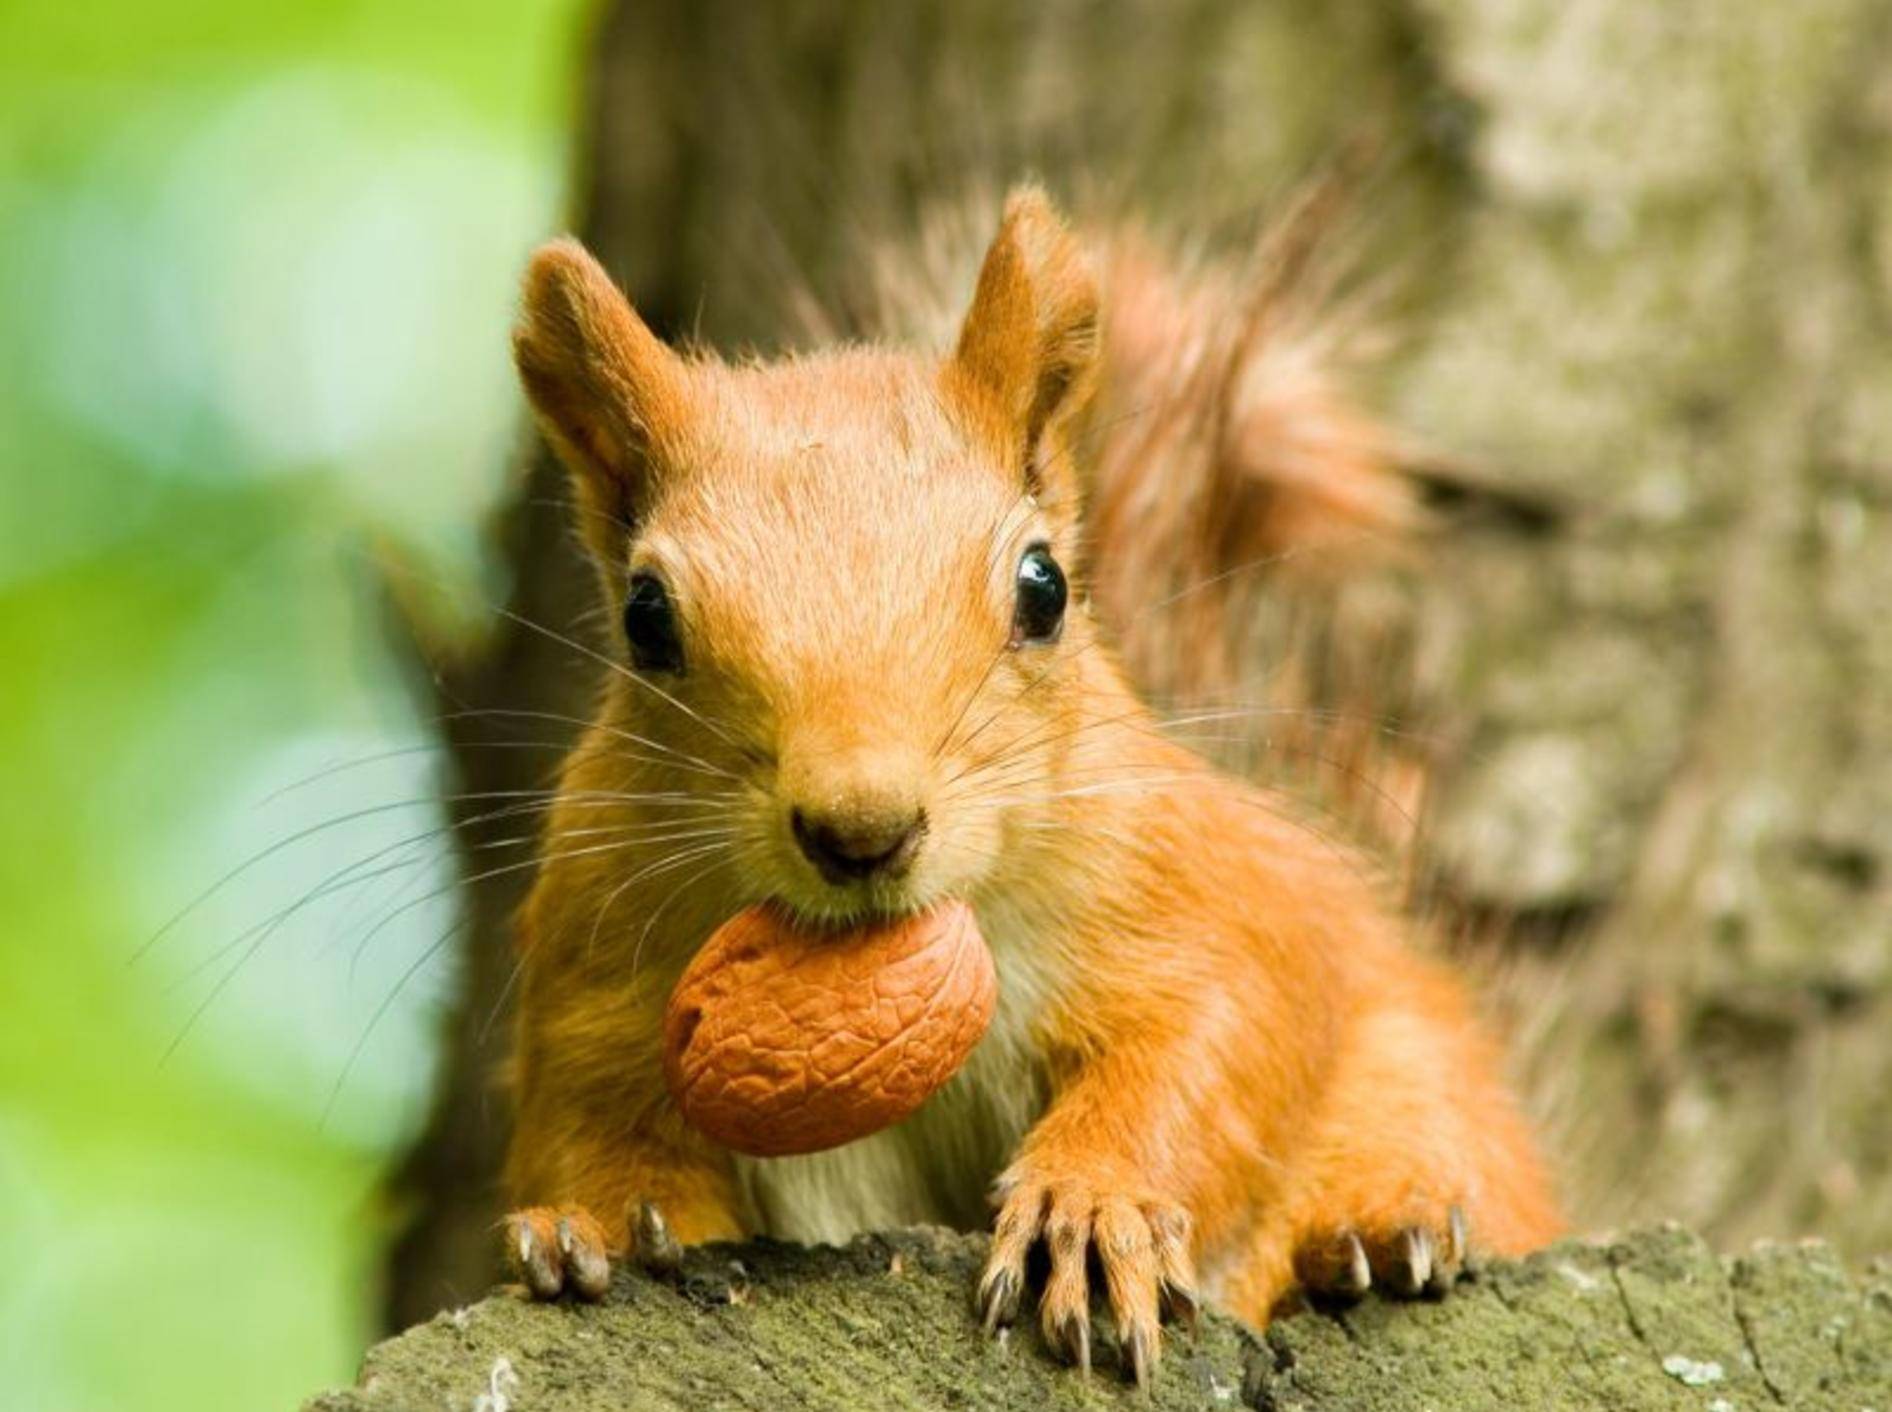 Eichhörnchen werden nach dem langen kalten Winter wieder richtig aktiv und munter — Bild: Shutterstock / yuriy kulik